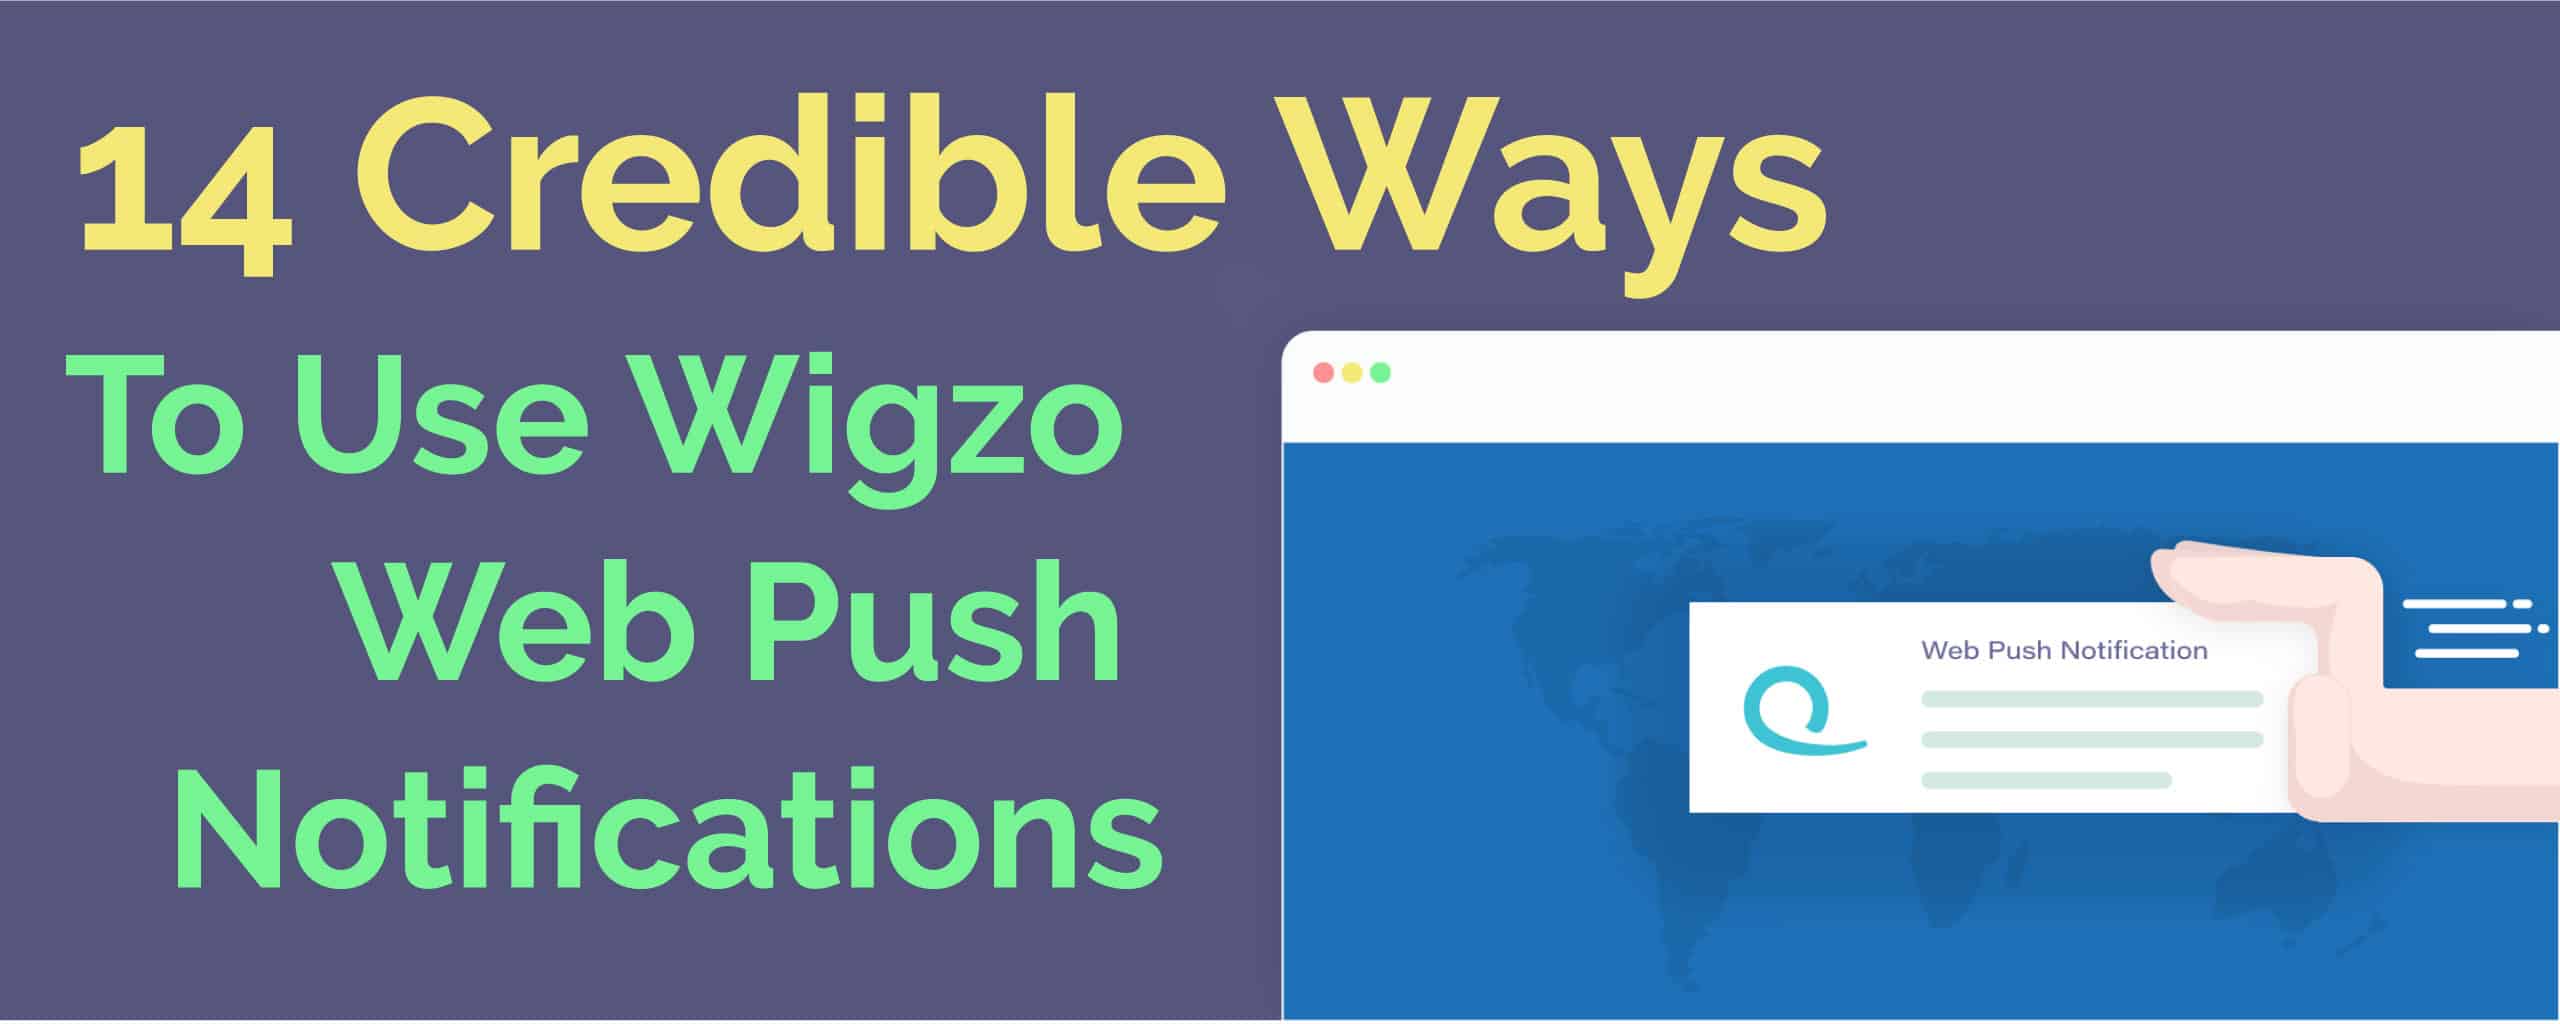 wigzo-web-push-notifications